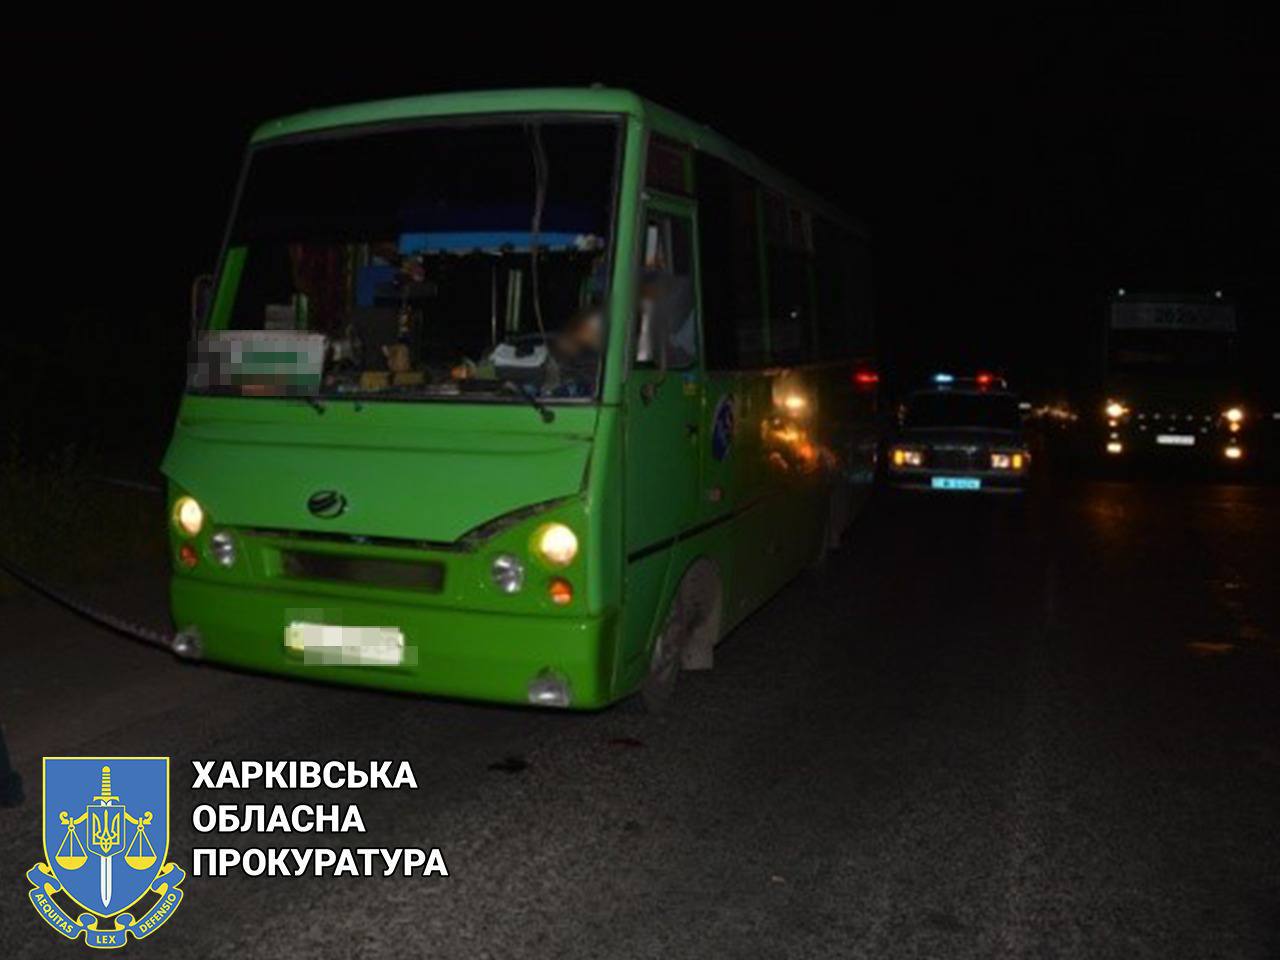 Суд вынес приговор убийце водителя автобуса «Харьков-Хорошево»